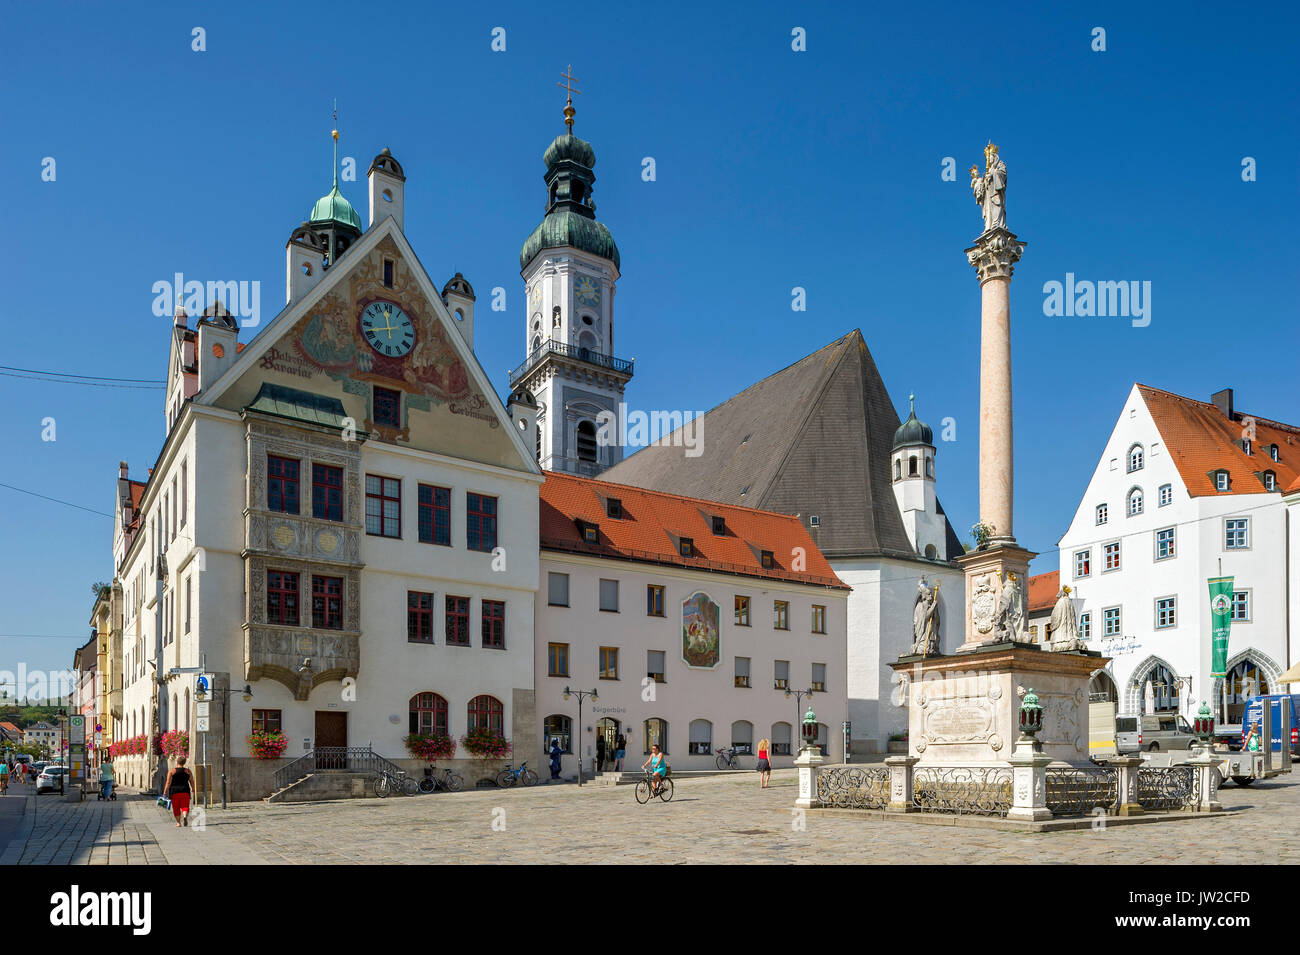 Mairie, ville église paroissiale St Georg, la colonne mariale, Marienplatz, Freising, Upper Bavaria, Bavaria, Germany Banque D'Images